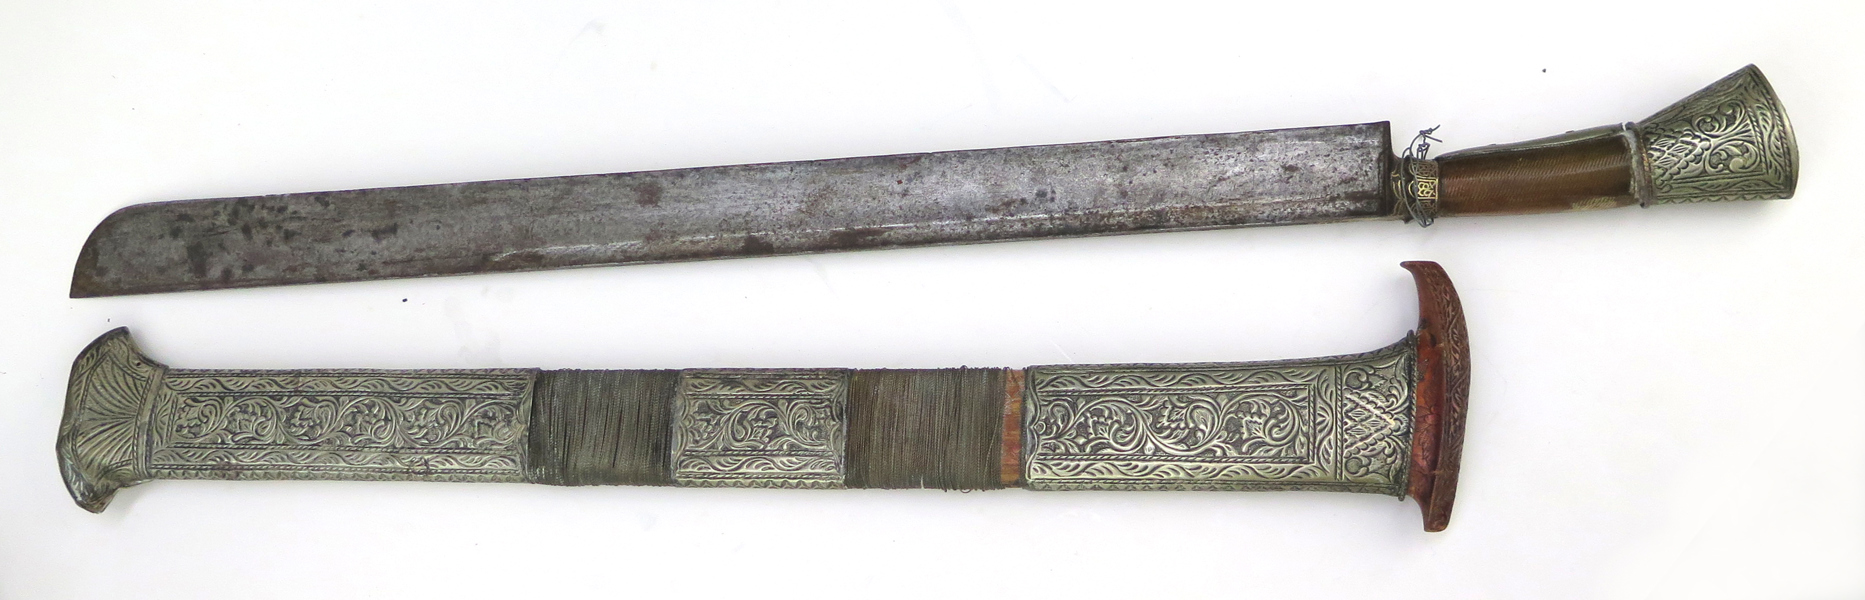 Kortsvärd i balja, så kallad Klewang, Malaysia, 1900-tal, fäste och balja i försilvrad metall, total l 70 cm_31540a_8dbb393f2b62075_lg.jpeg